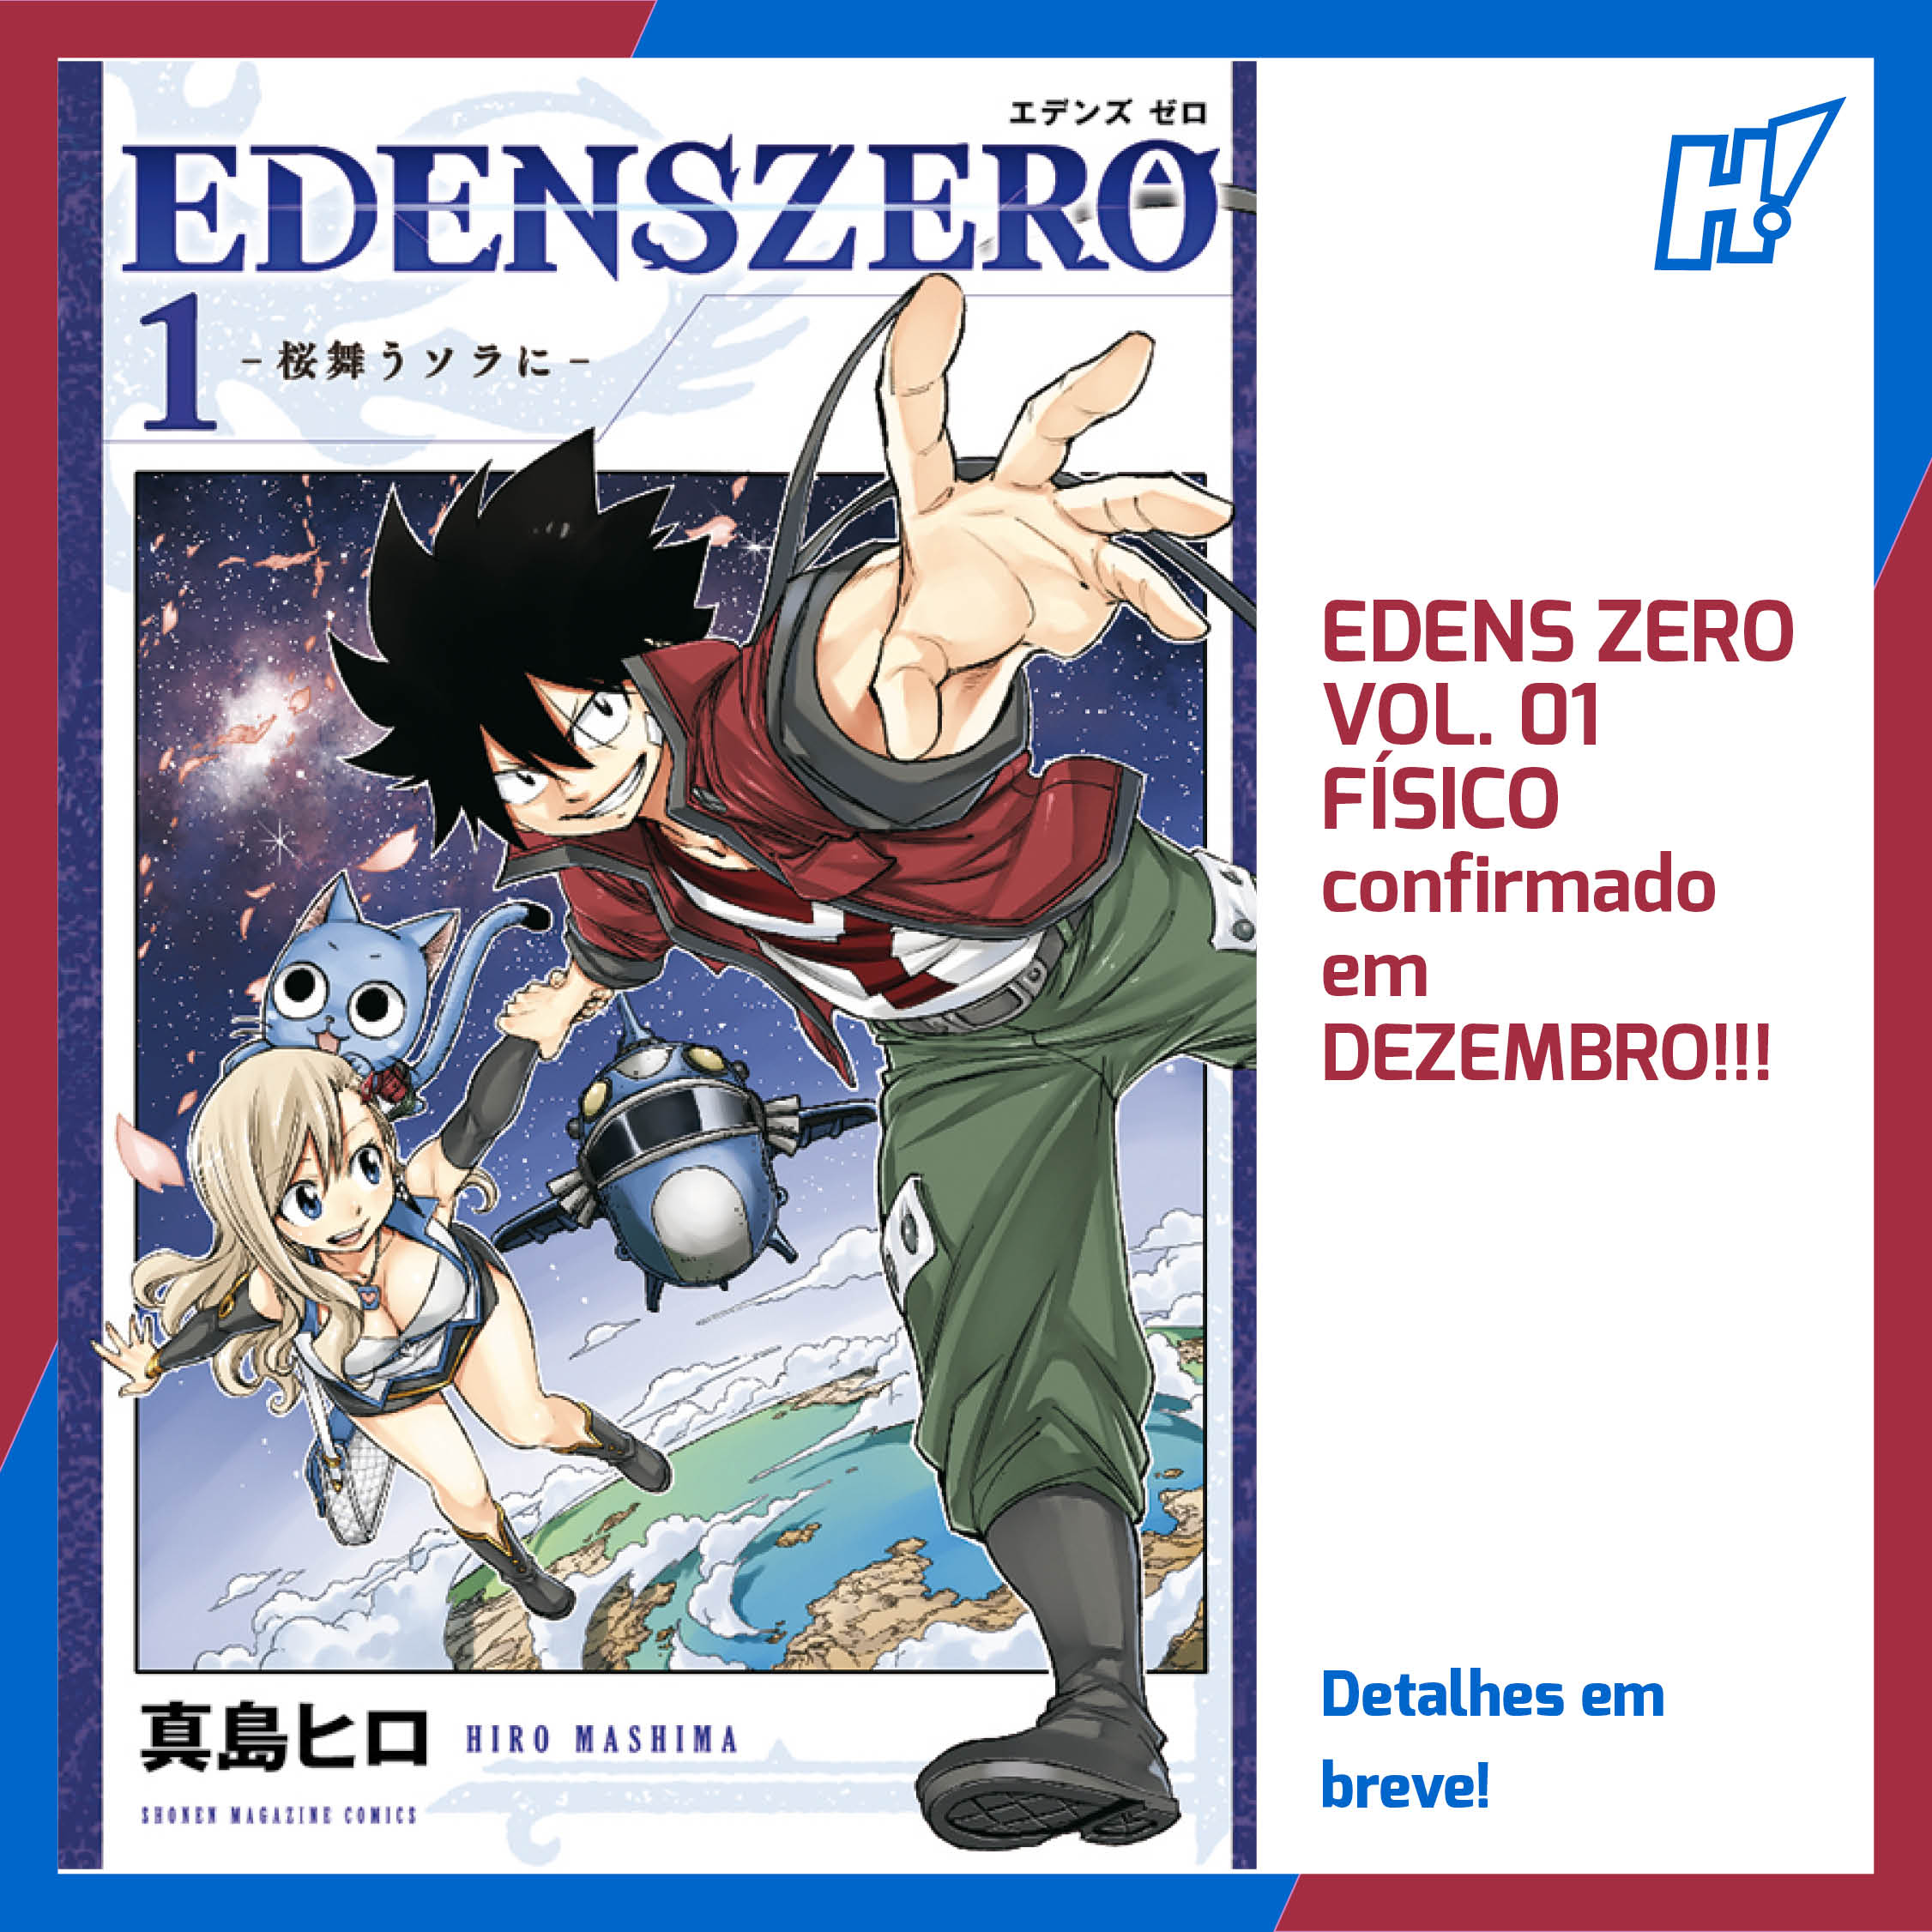 Volume 1 de Edens Zero chegará em dezembro no Brasil